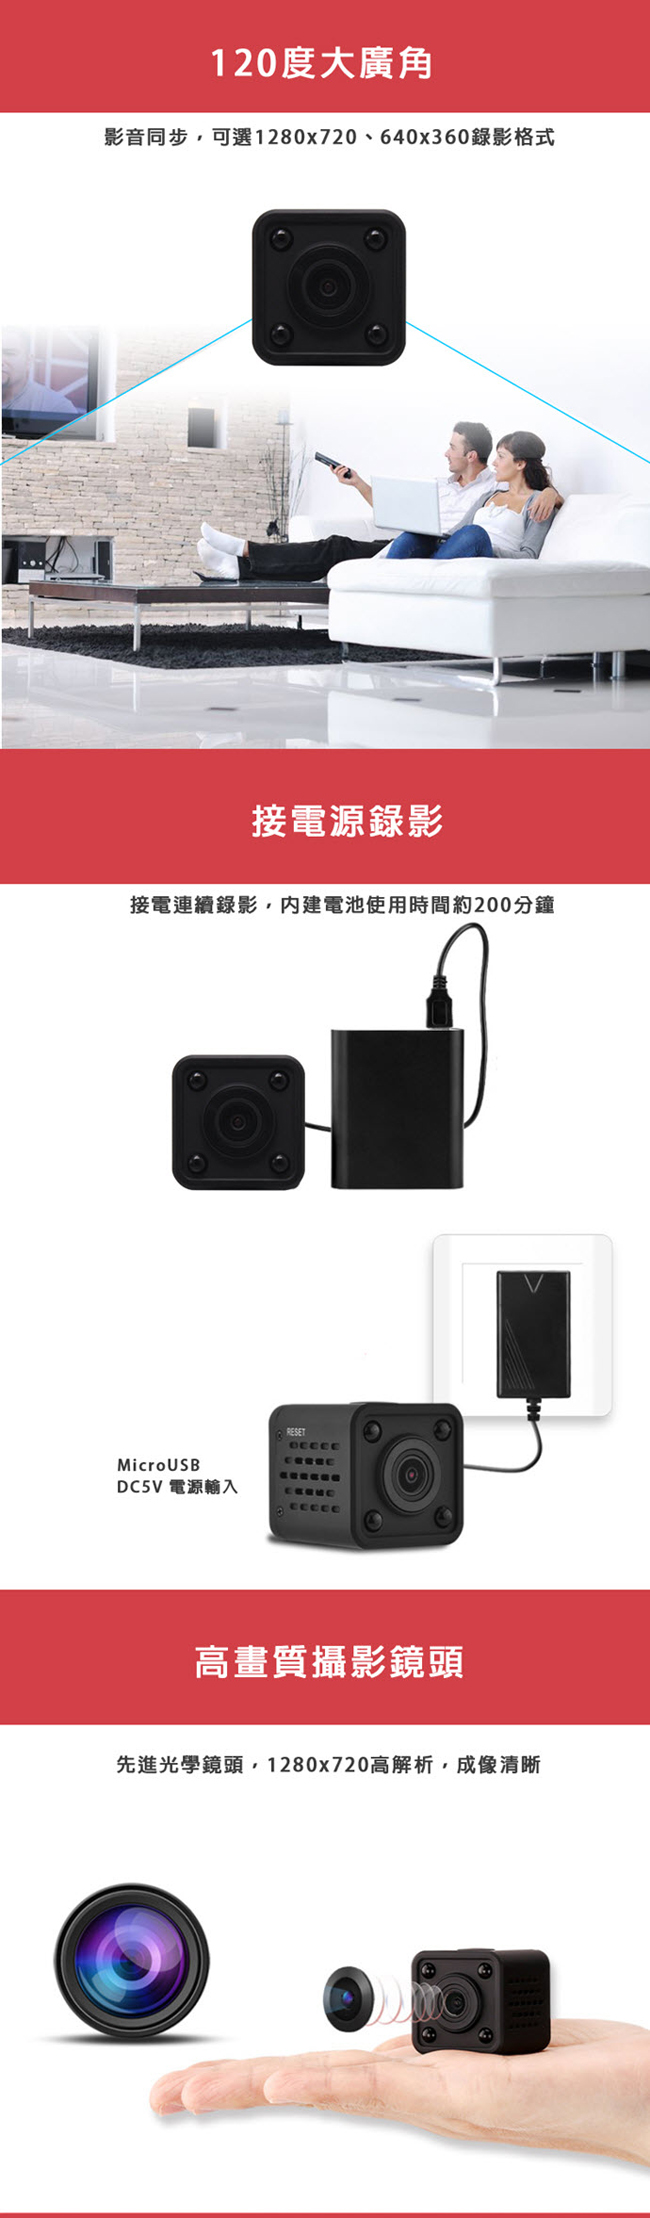 MVRQ9 磁吸式夜視網路微型攝影機